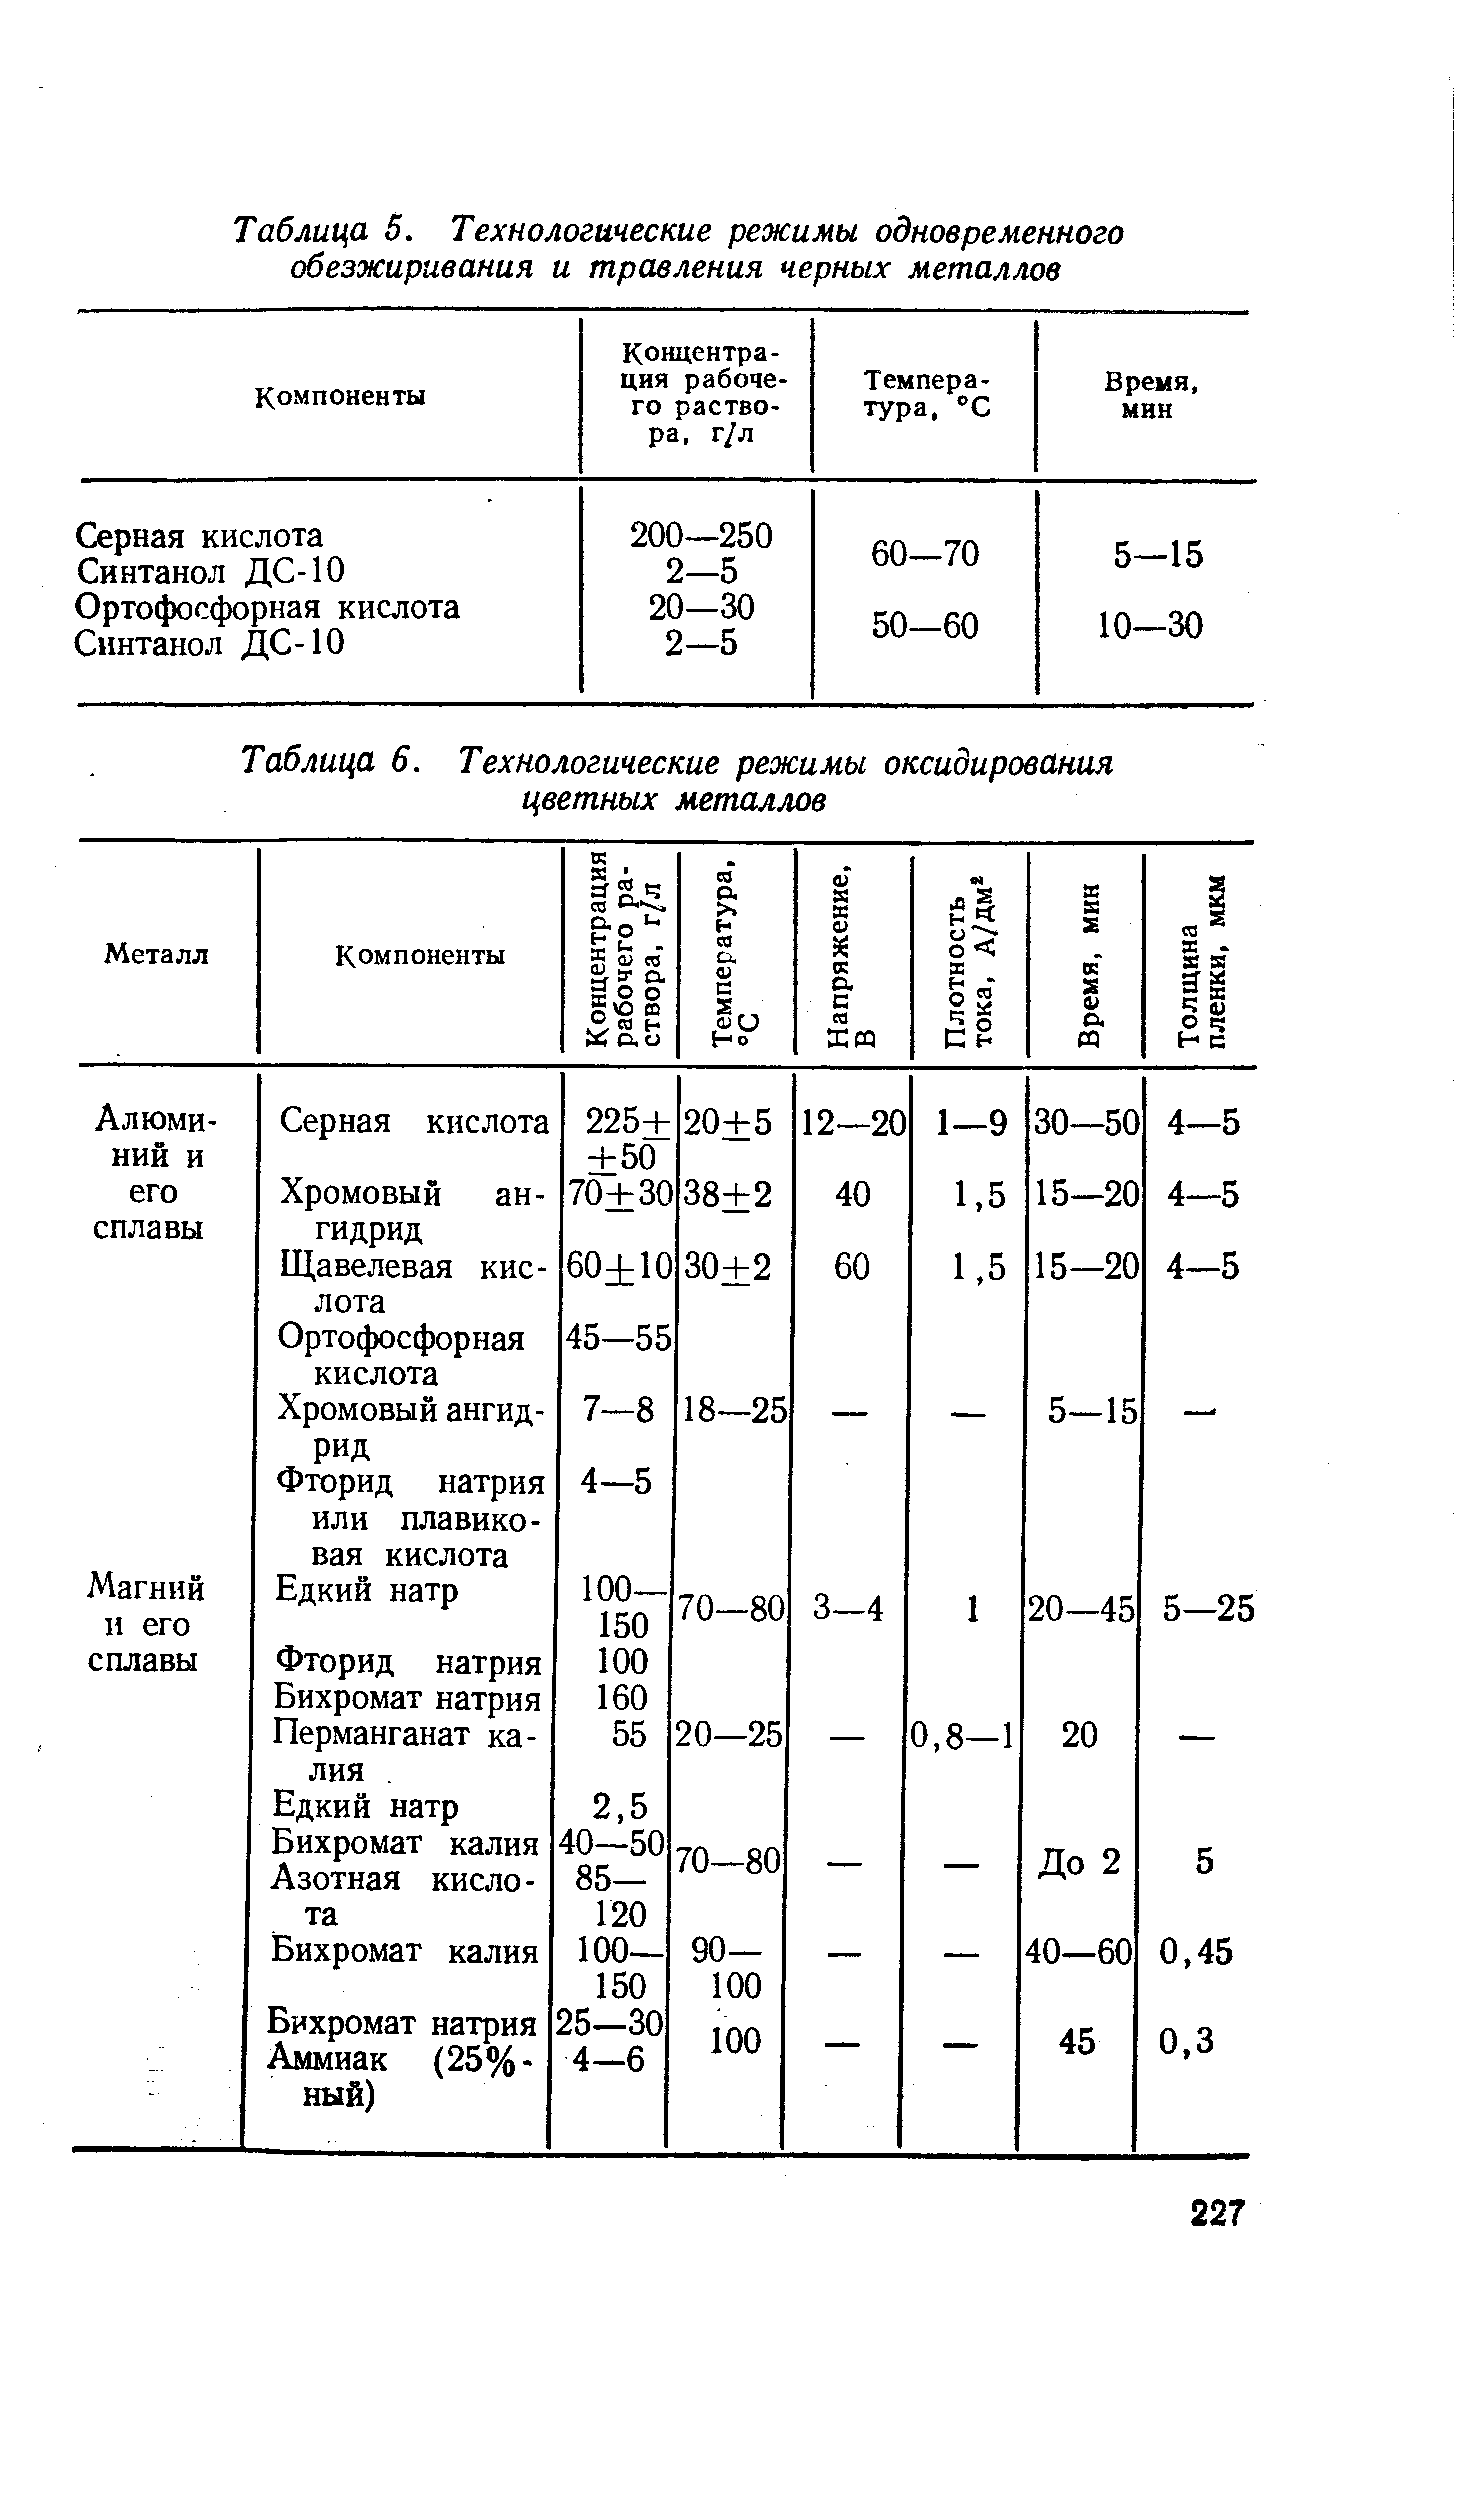 Таблица 6. Технологические режимы оксидирования цветных металлов
